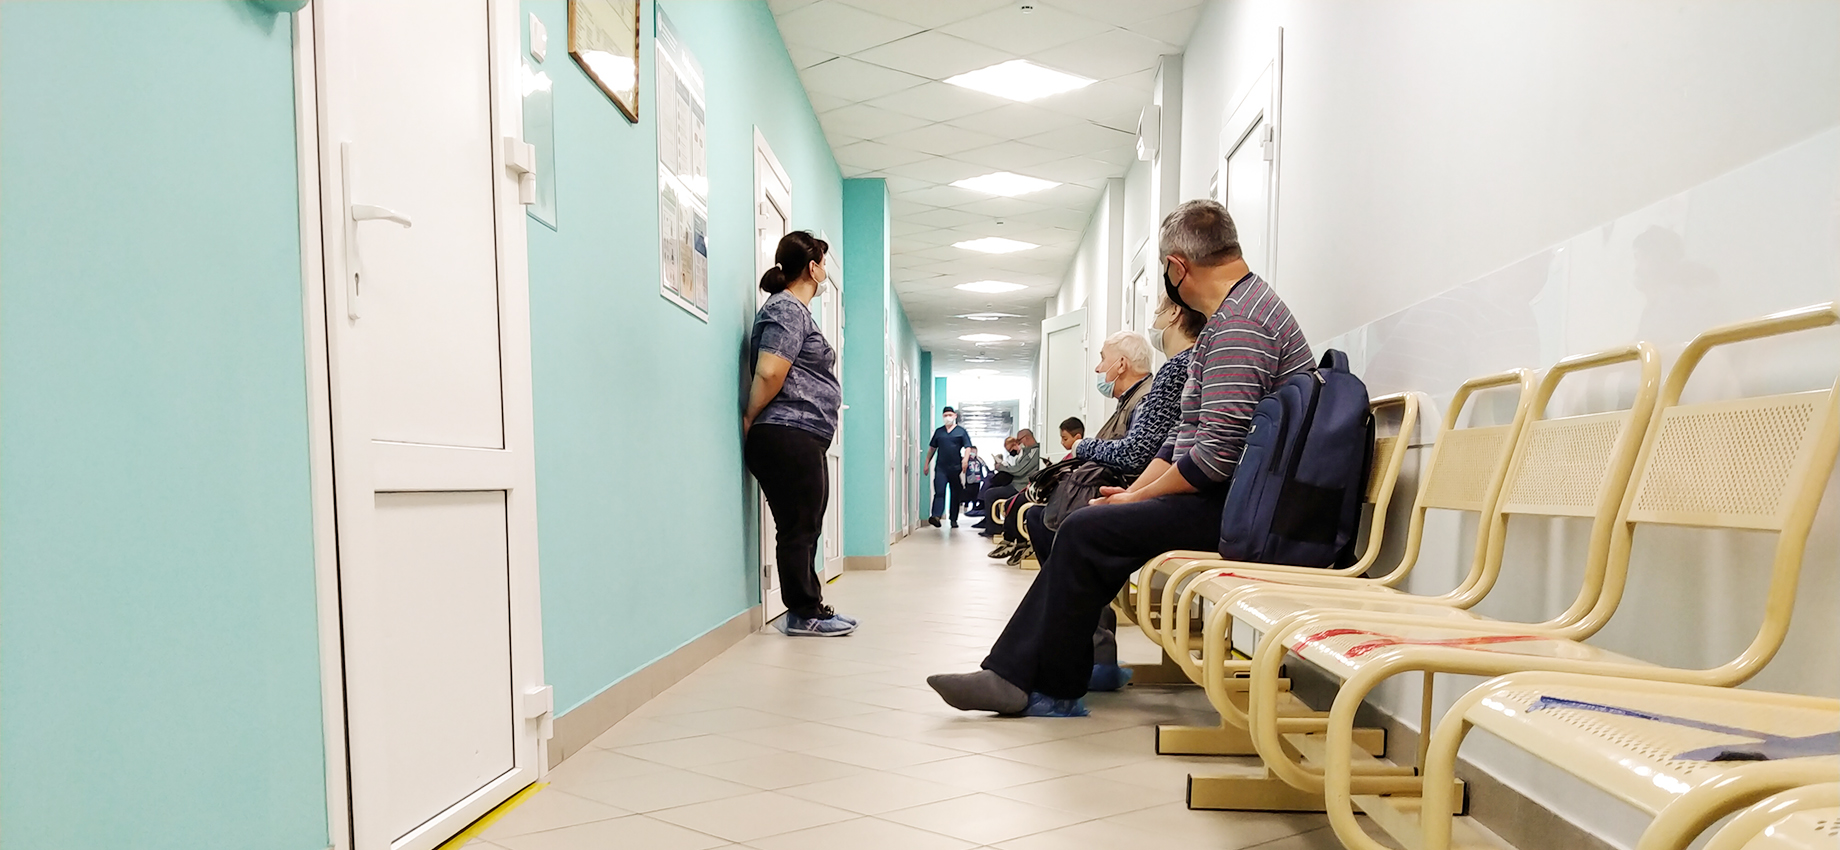 В Санкт-Петербурге запретили плановую медицинскую помощь и диспансеризацию из-за пандемии